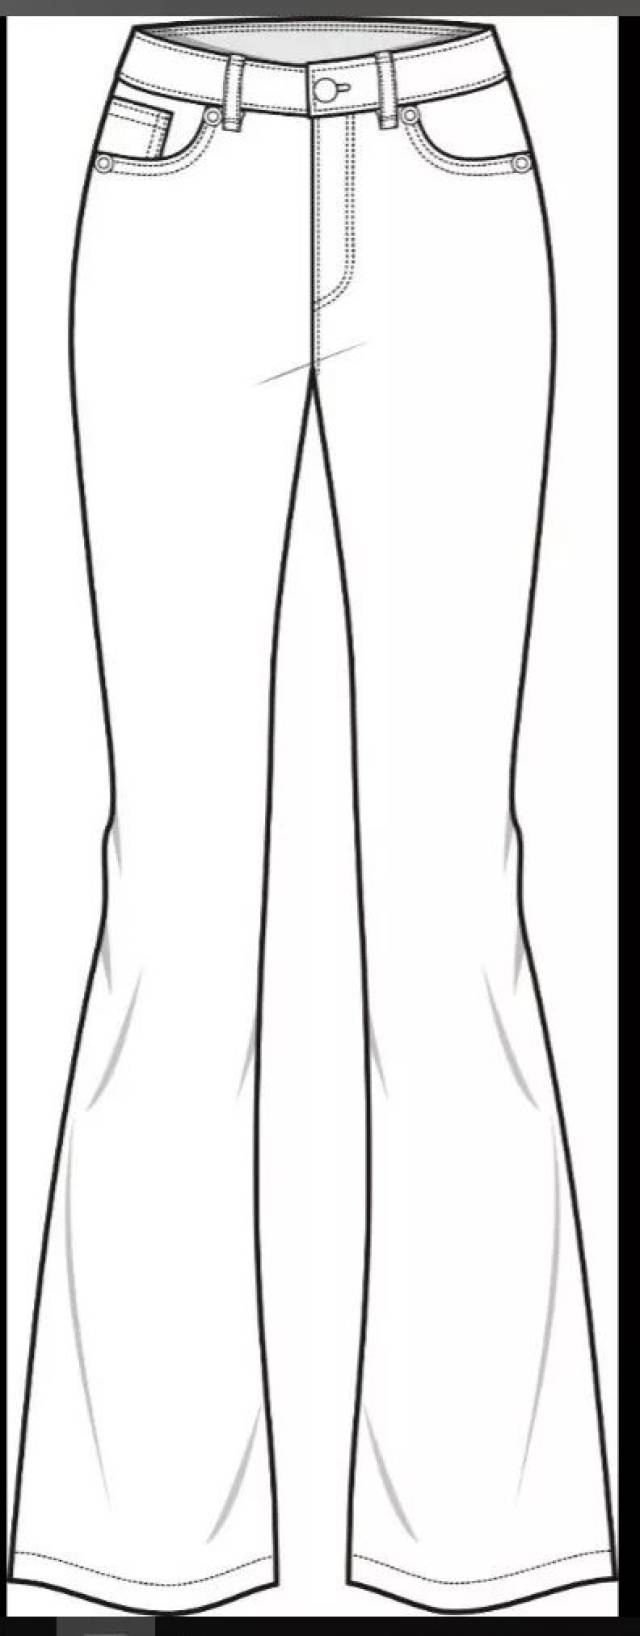 款式图模板(t恤,衬衫,外套,裤子款式图)